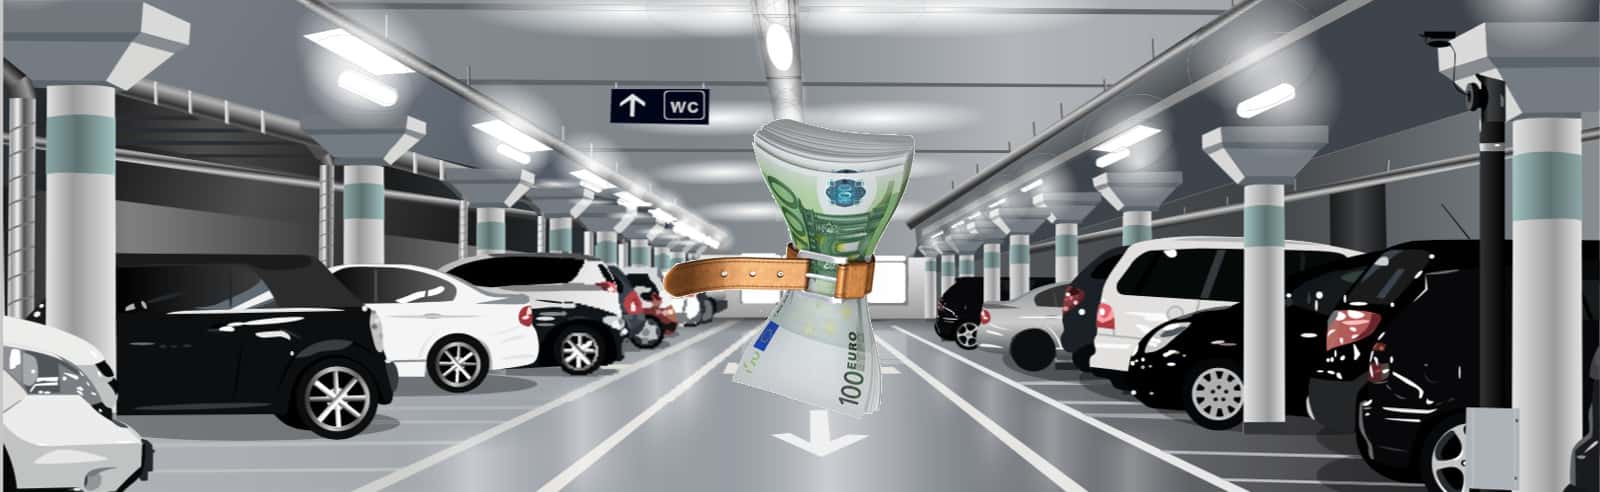 Waar te parkeren in Zaventem ? Het is heel eenvoudig met MyflexiPark!